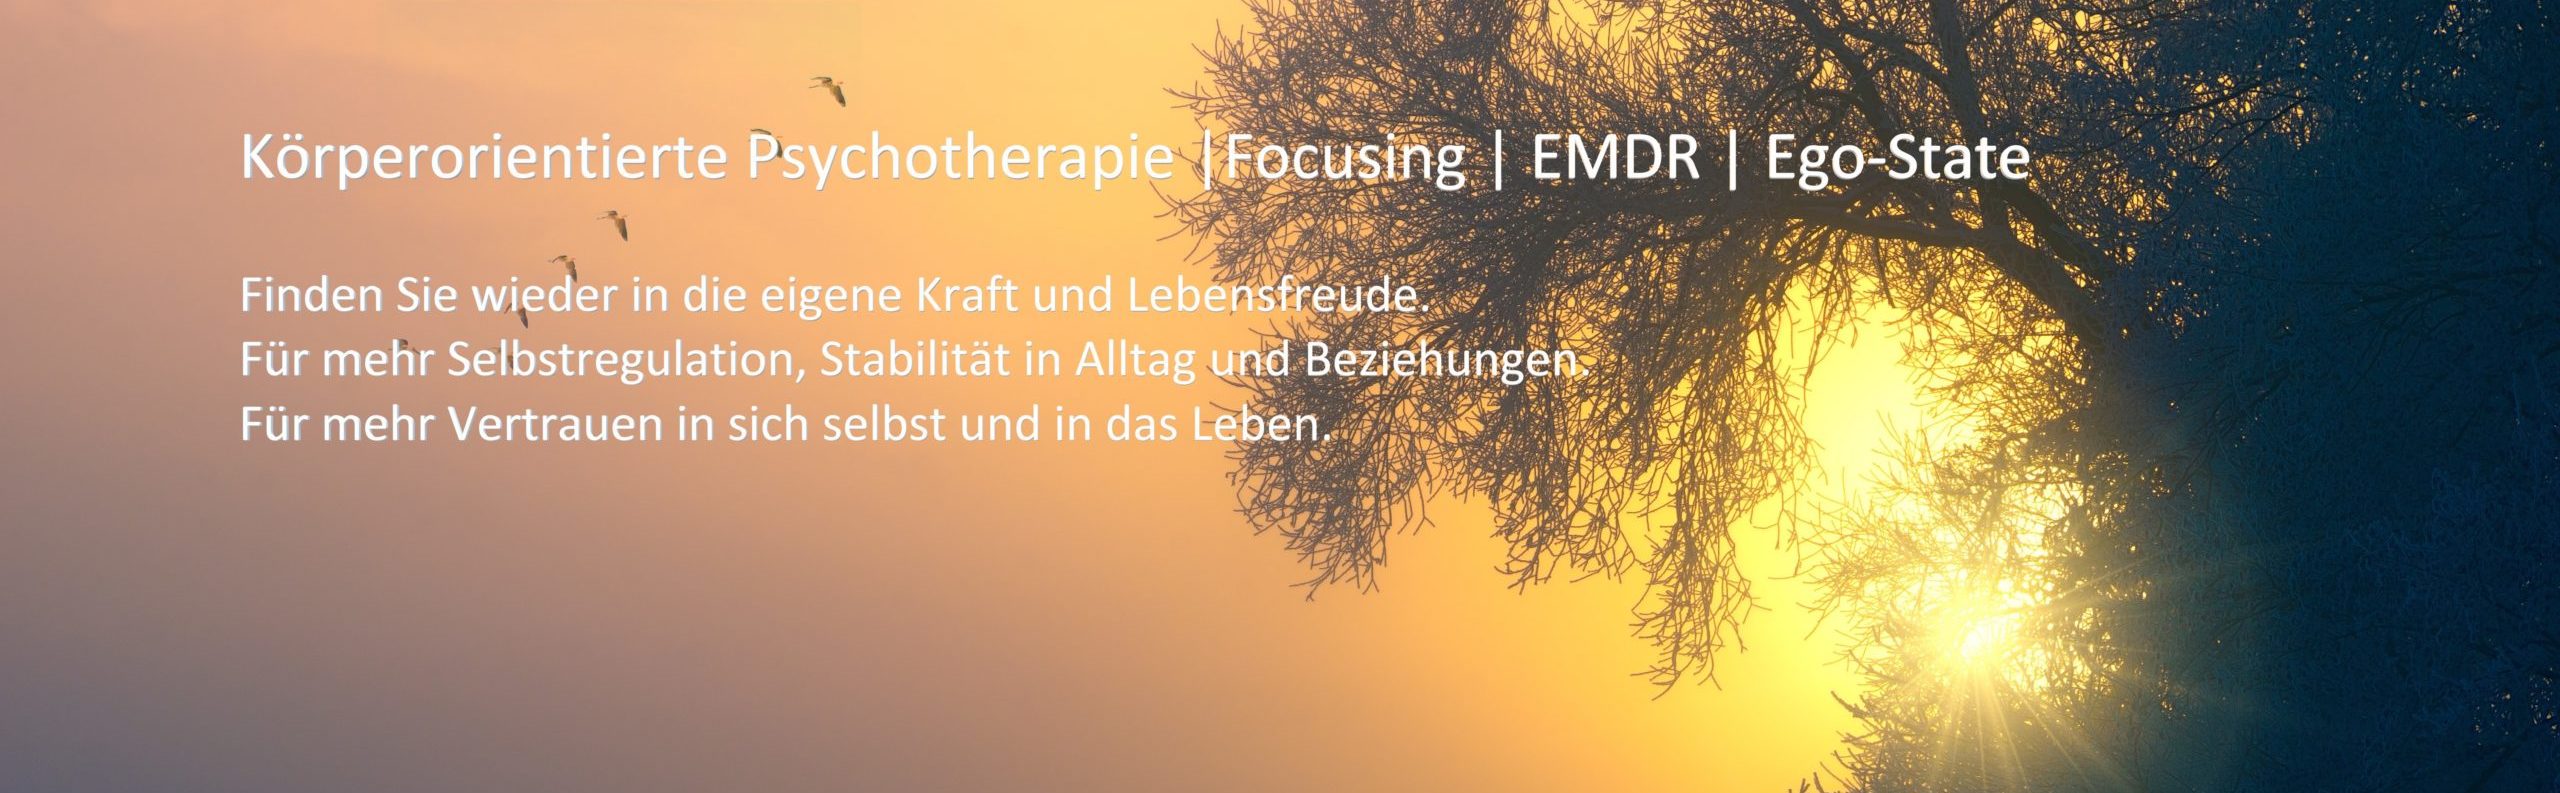 Körperpsychotherapie - Körperorientierte Psychotherapie Berlin